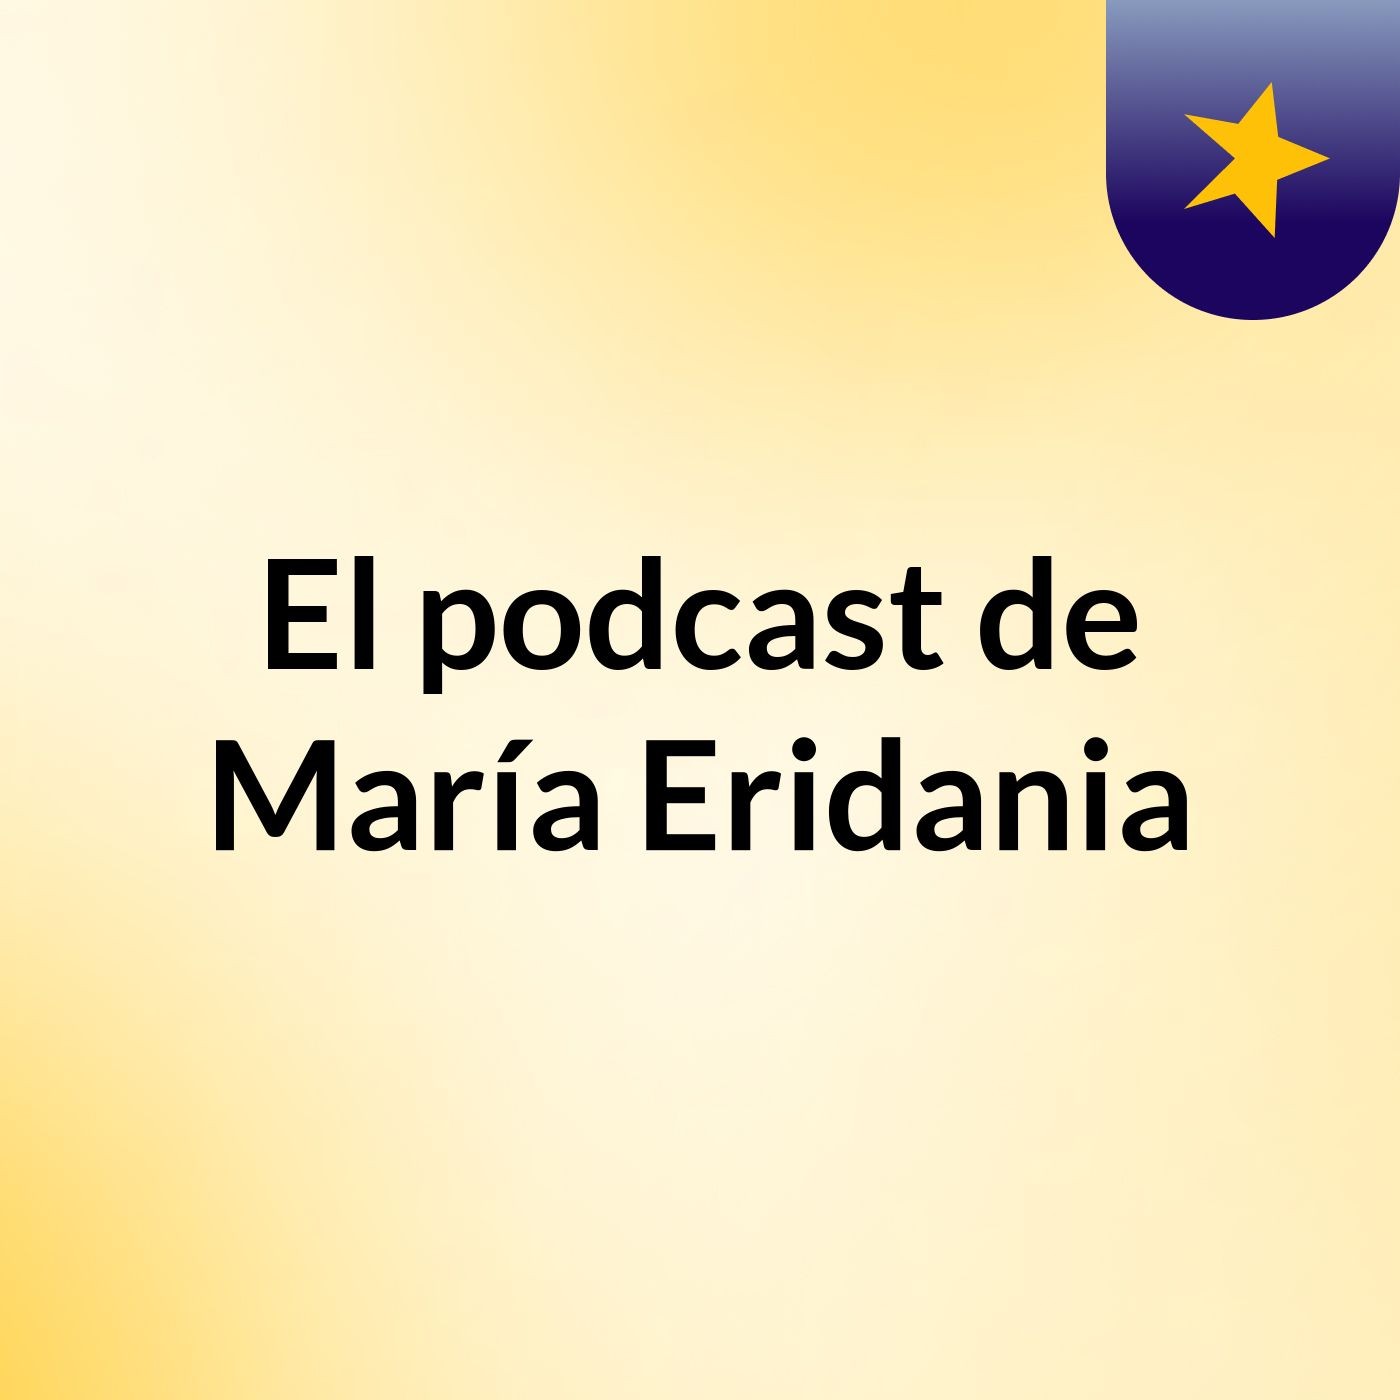 El podcast de María Eridania